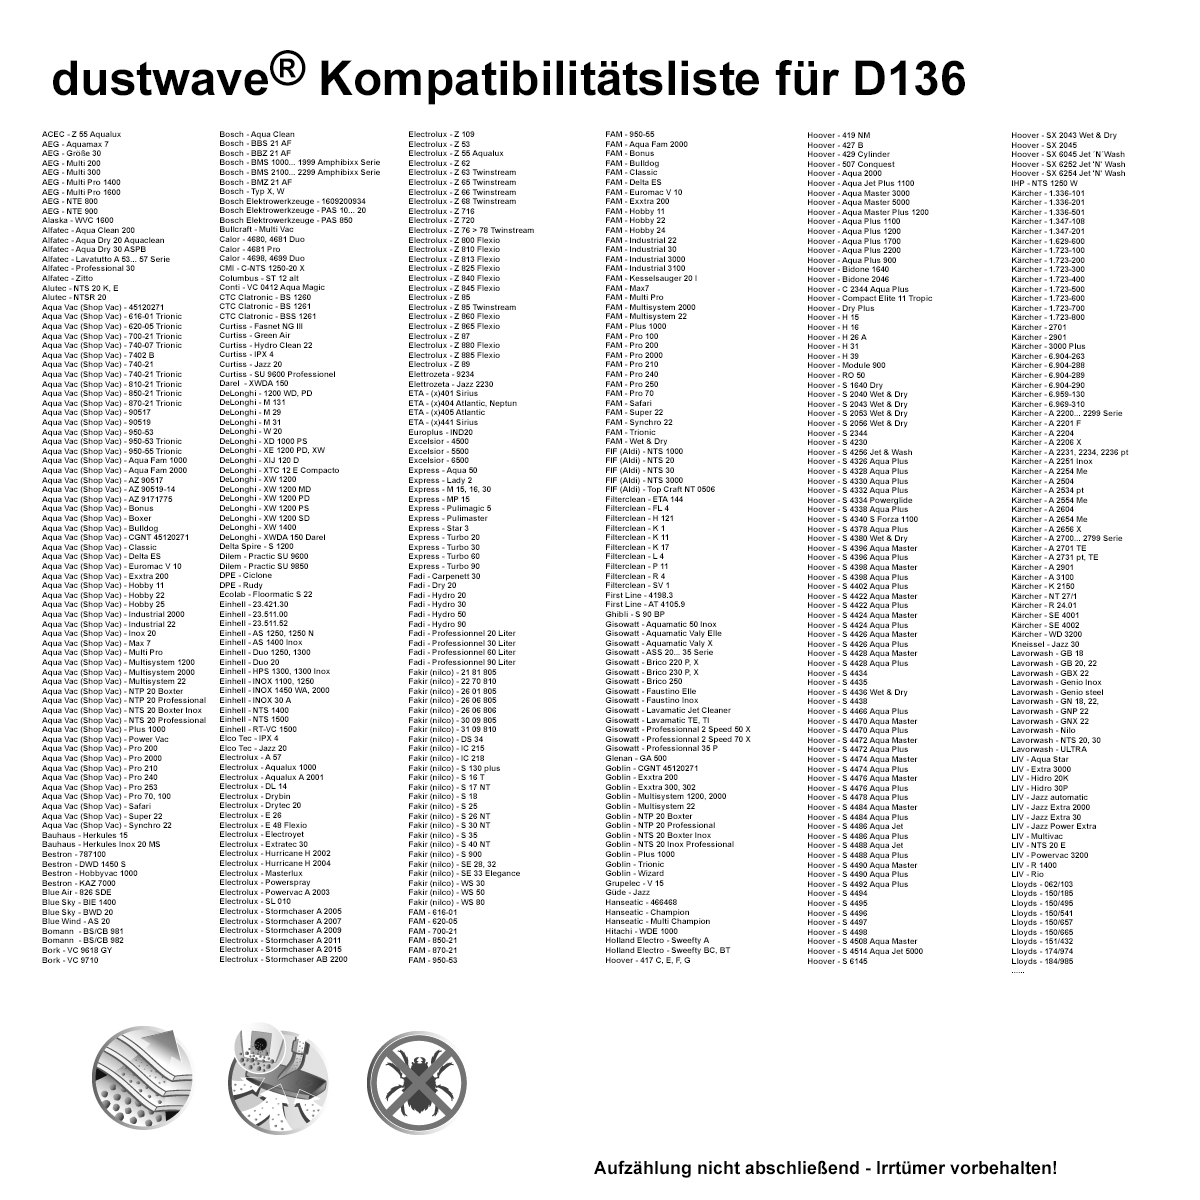 Dustwave® 40 Staubsaugerbeutel für AEG GR30 / Größe 30 - hocheffizient, mehrlagiges Mikrovlies mit Hygieneverschluss - Made in Germany